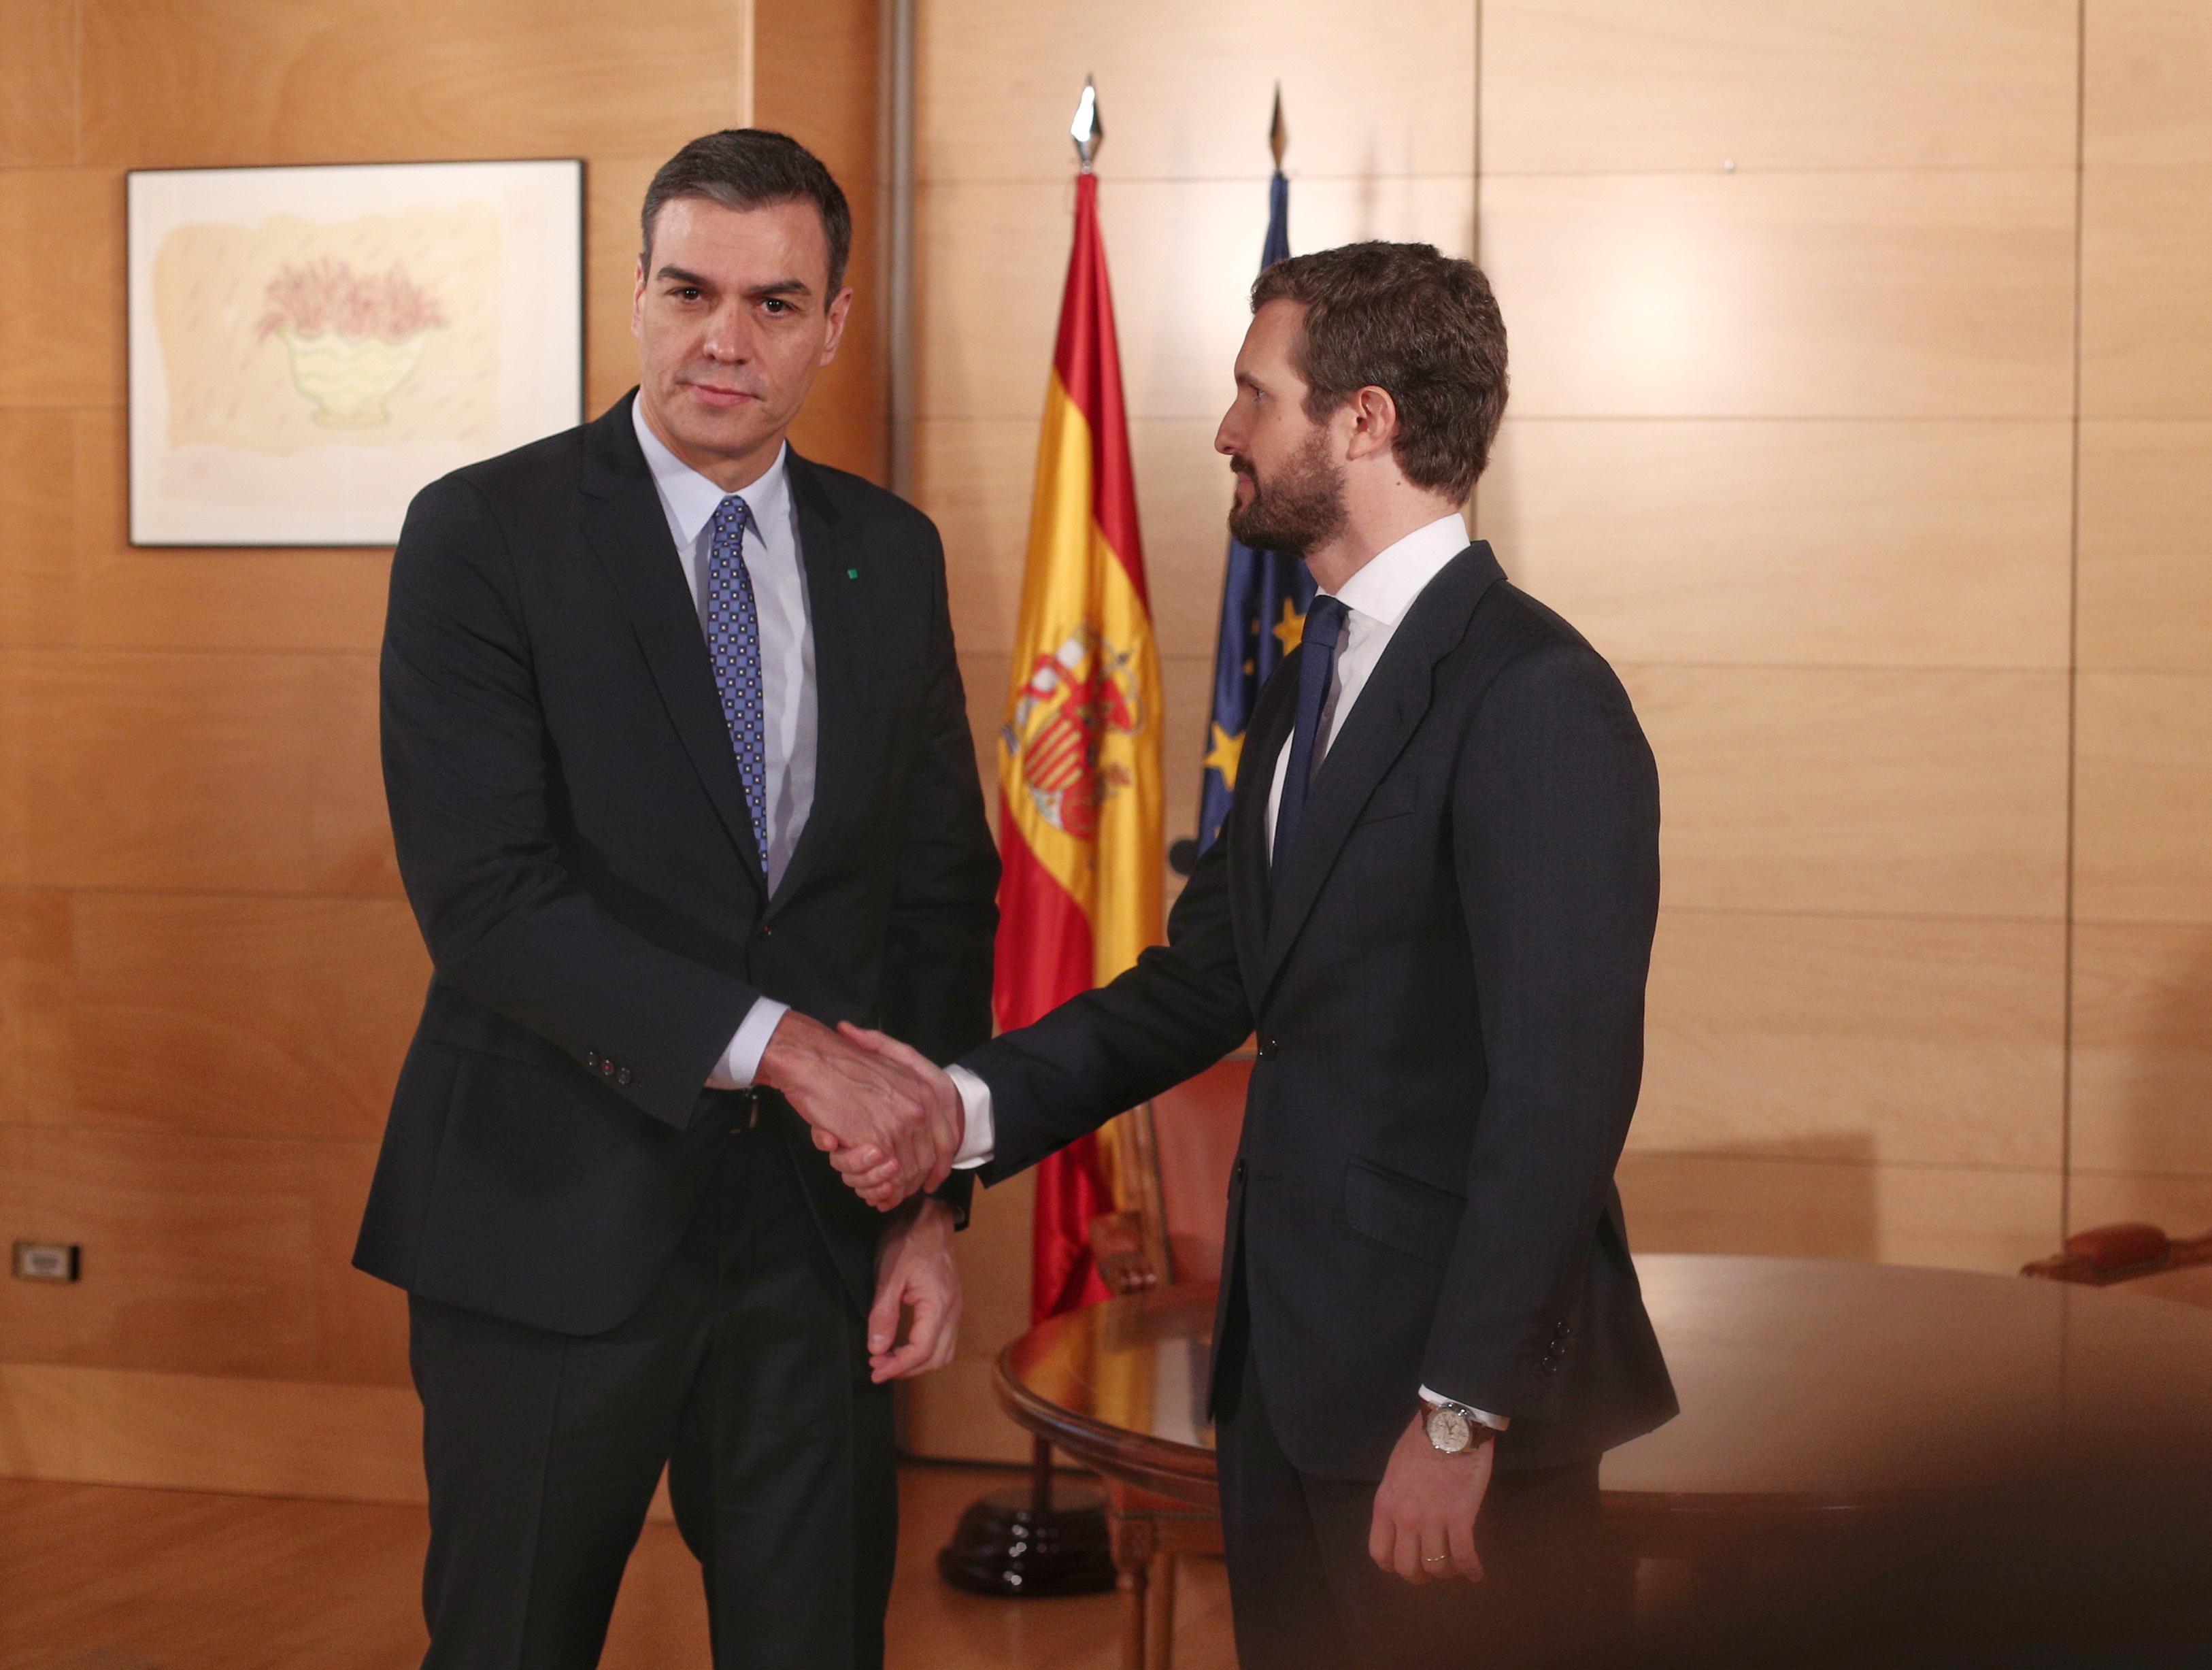 EuropaPress 2551157 El presidente del Gobiero en funciones Pedro Sánchez (izq) y el presidente del PP Pablo Casado (dech) se saludan momentos antes de su reunión en el Congreso de los Diputados en Madrid (Españ